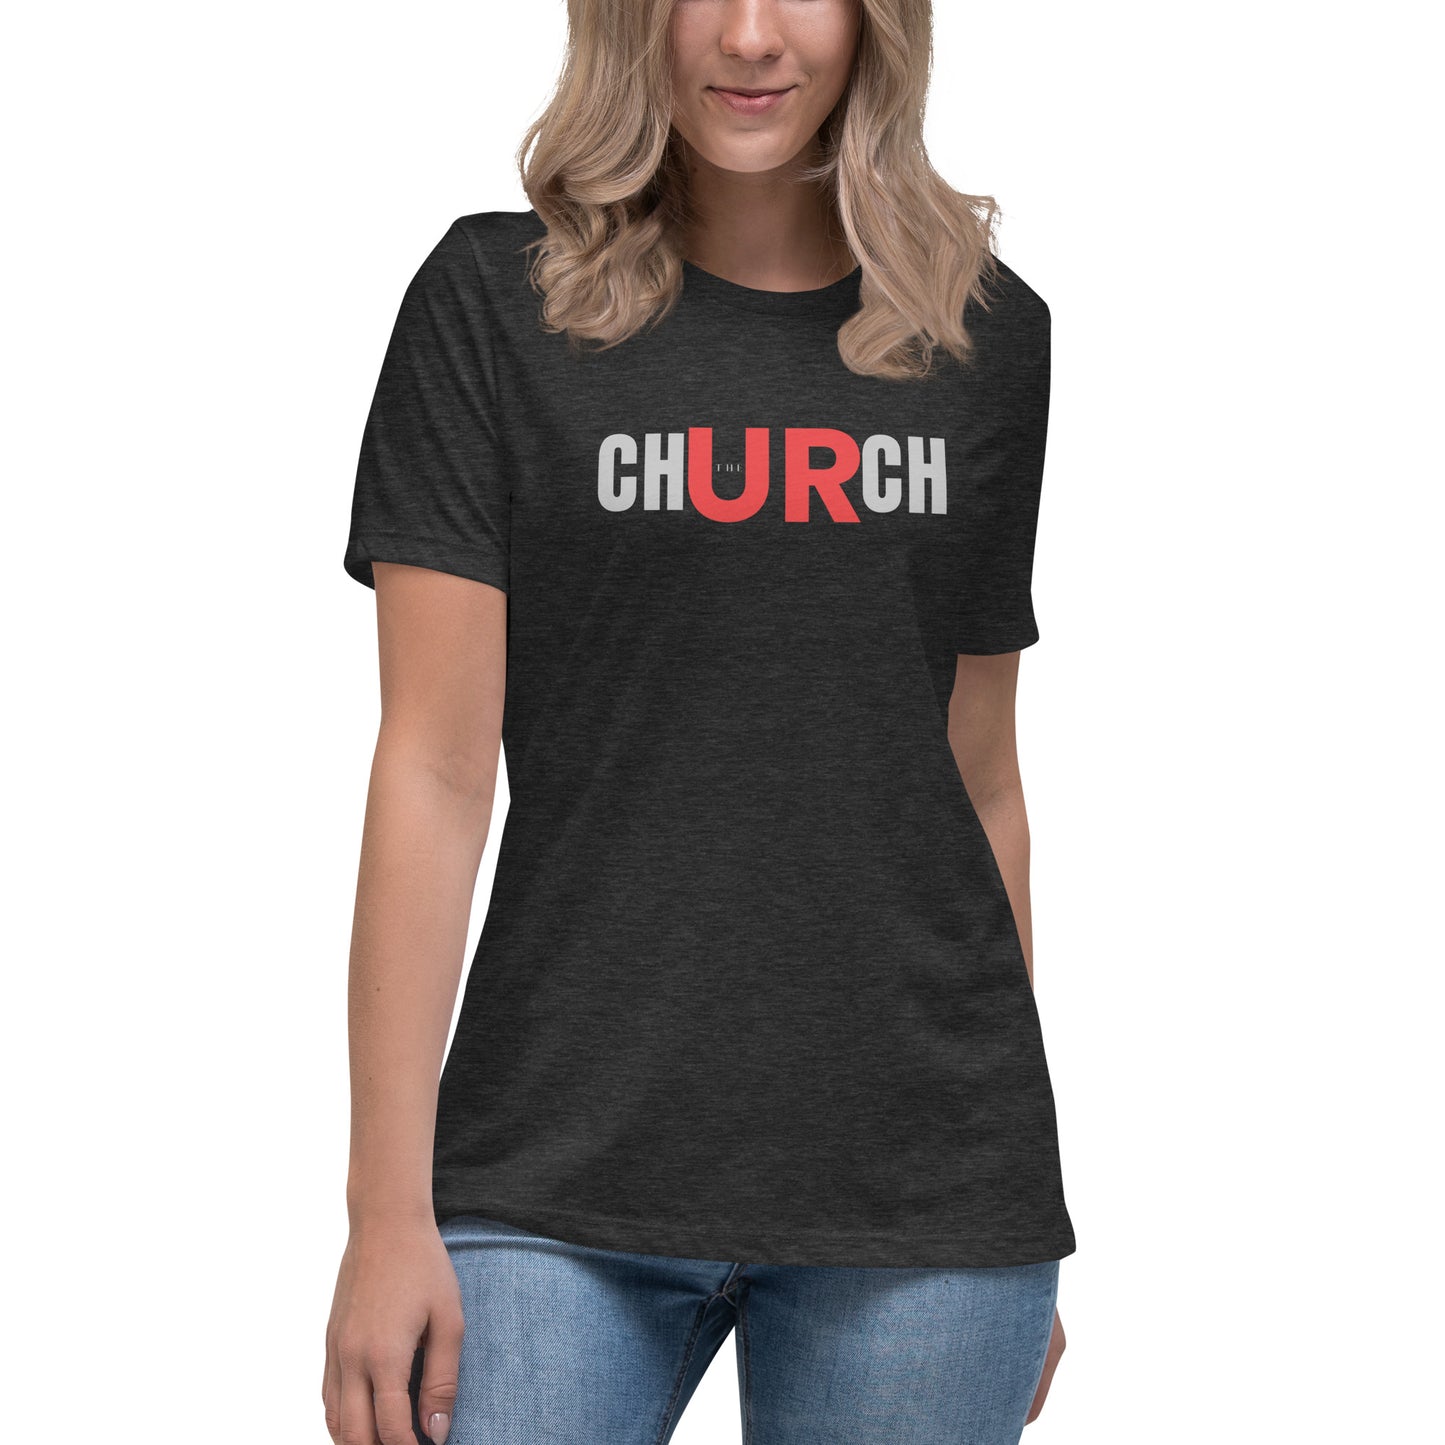 chURch (the) Women's Relaxed T-Shirt